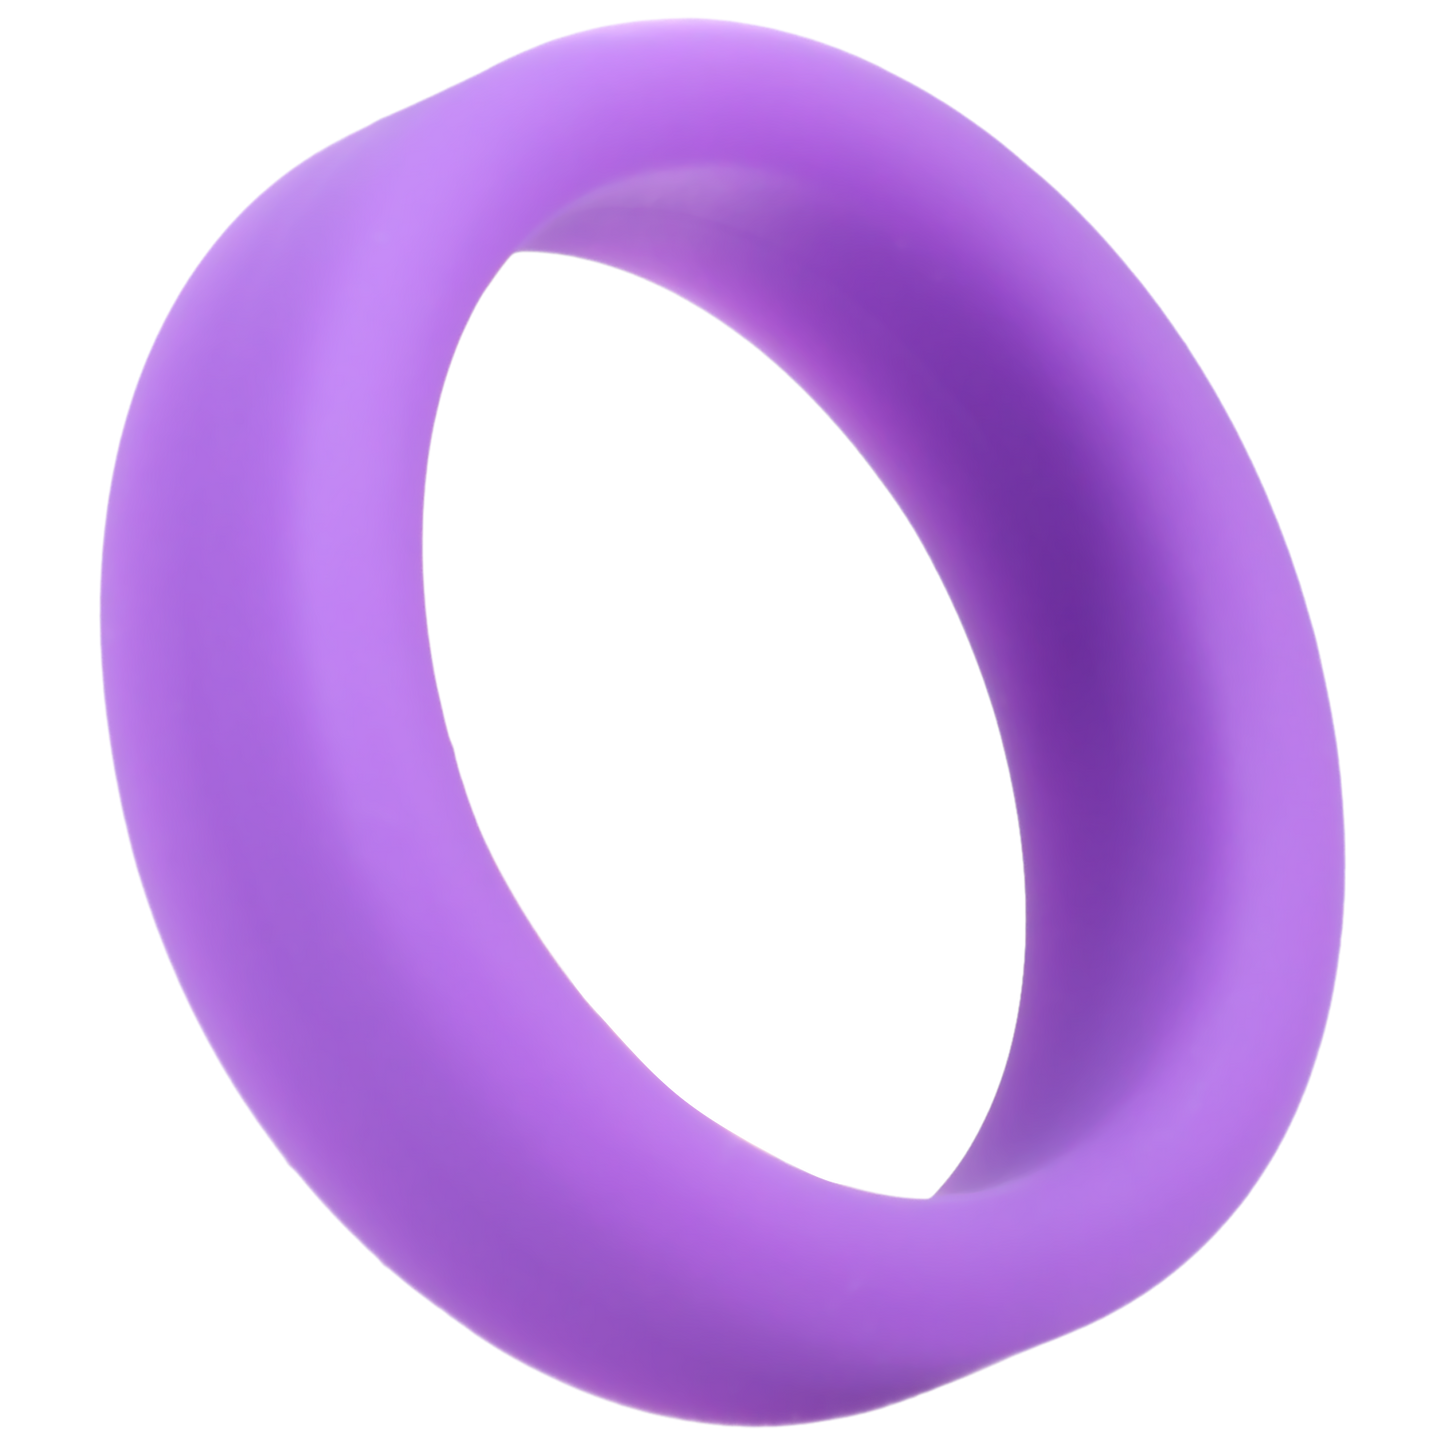 Super Soft C-Ring Lilac Soft